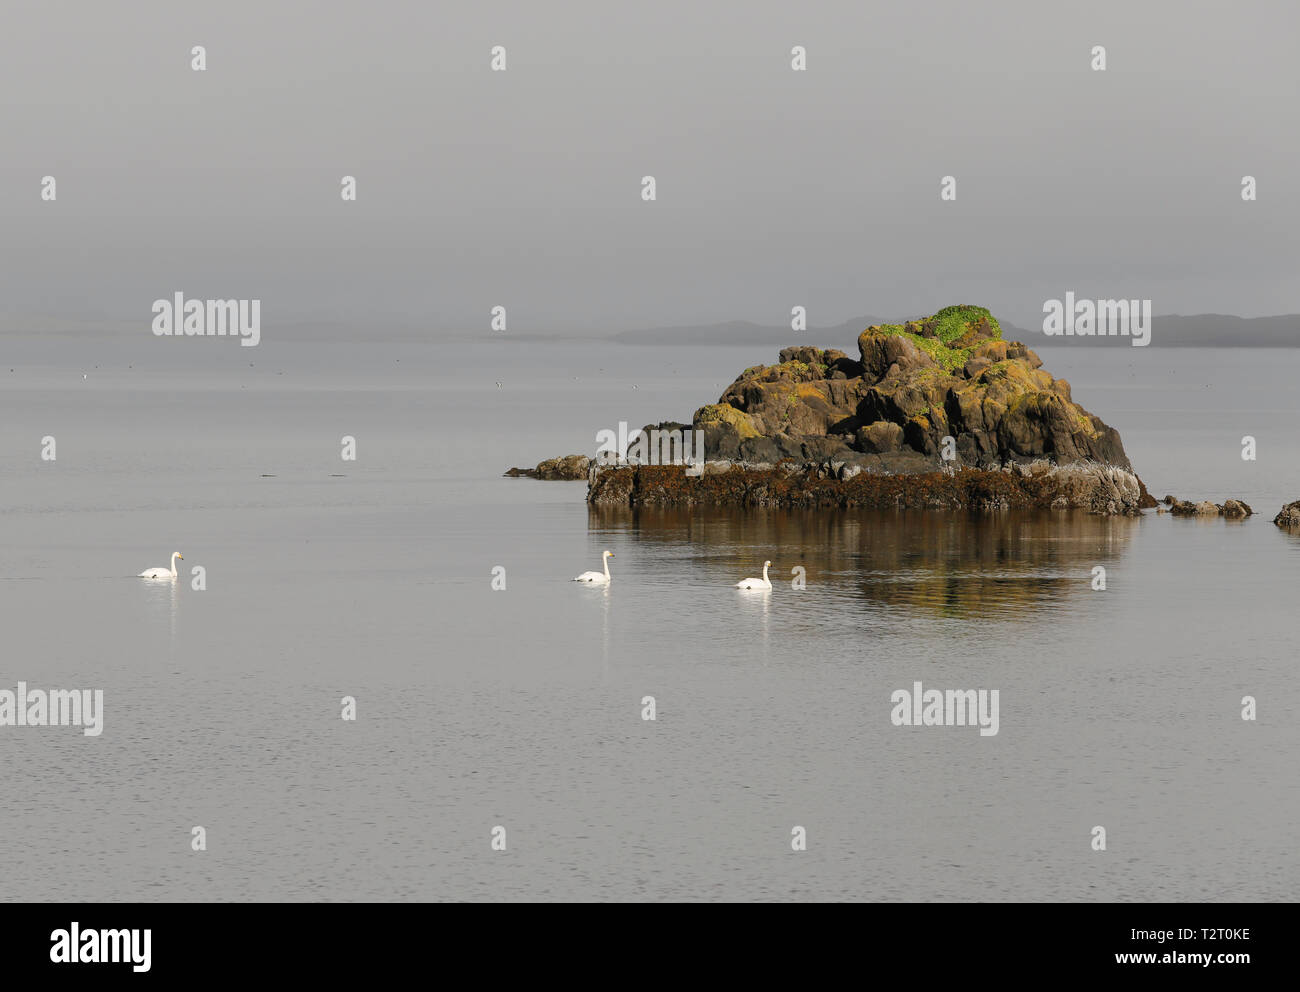 Whooper cigni galleggiante sulle acque tranquille del interramento estuario lagune trovata nei pressi di Djupivogur, in Islanda. Foto Stock